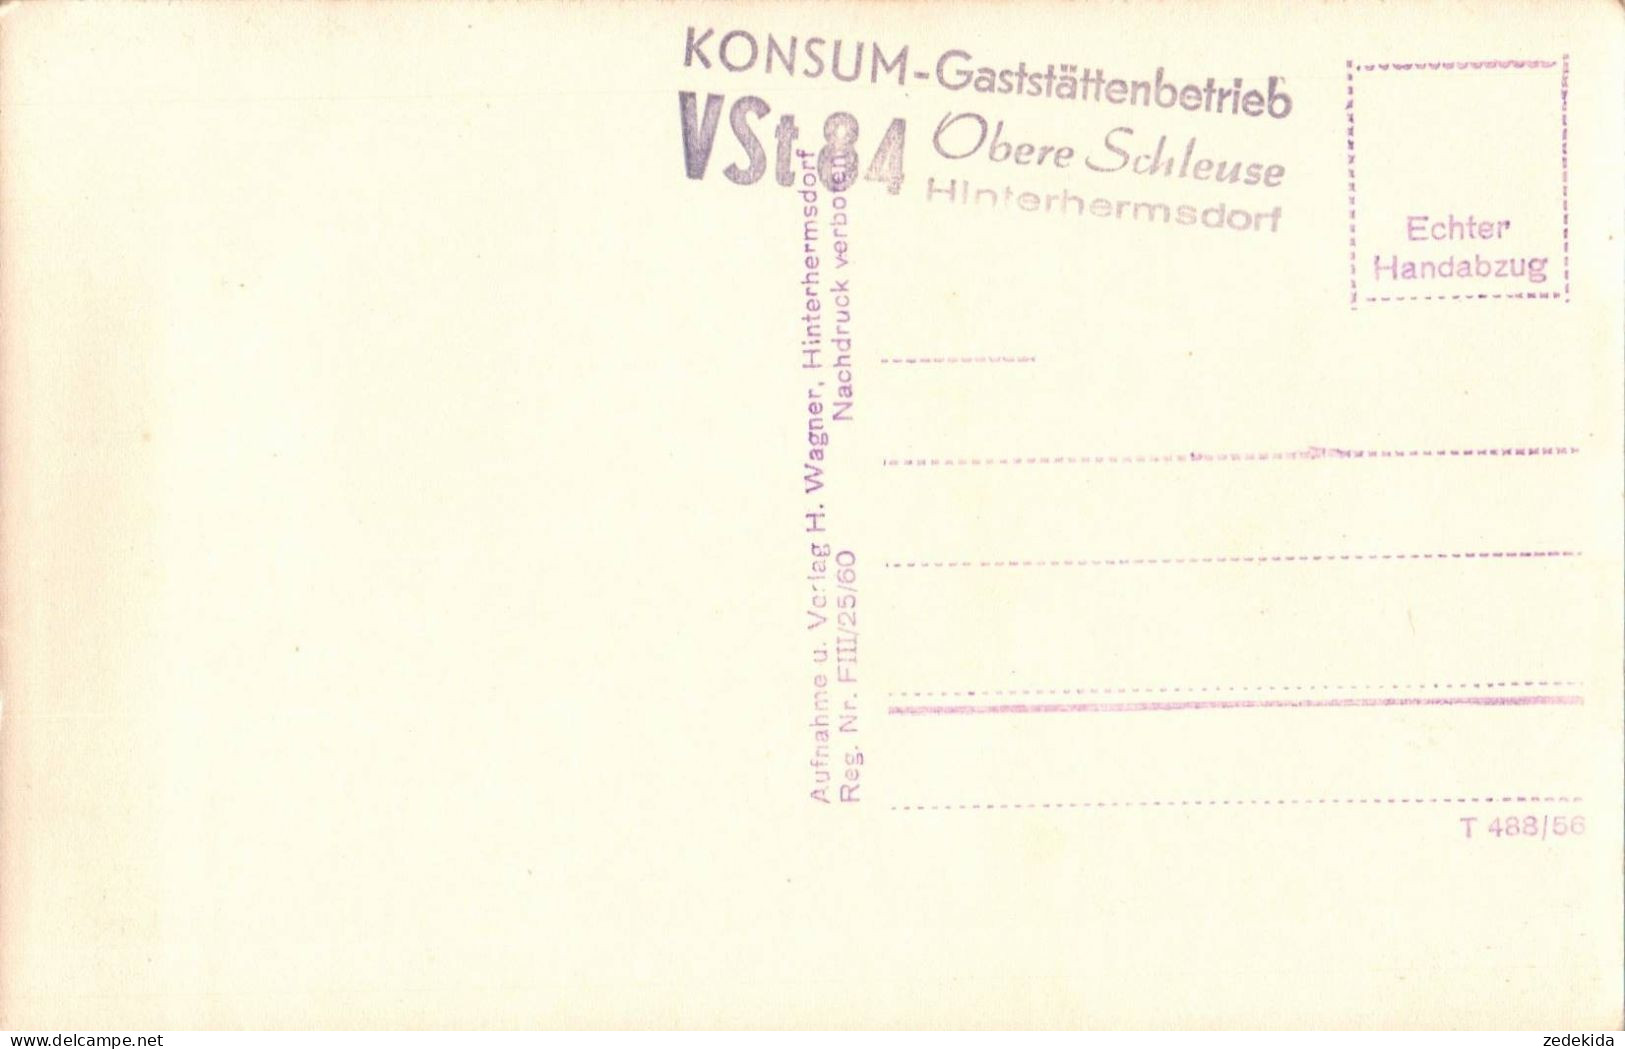 H1619 - Hinterhermsdorf Obere Schleuse Sächsische Schweiz - Konsum Gaststätte Verlag H. Wagner Handabzug - Hinterhermsdorf